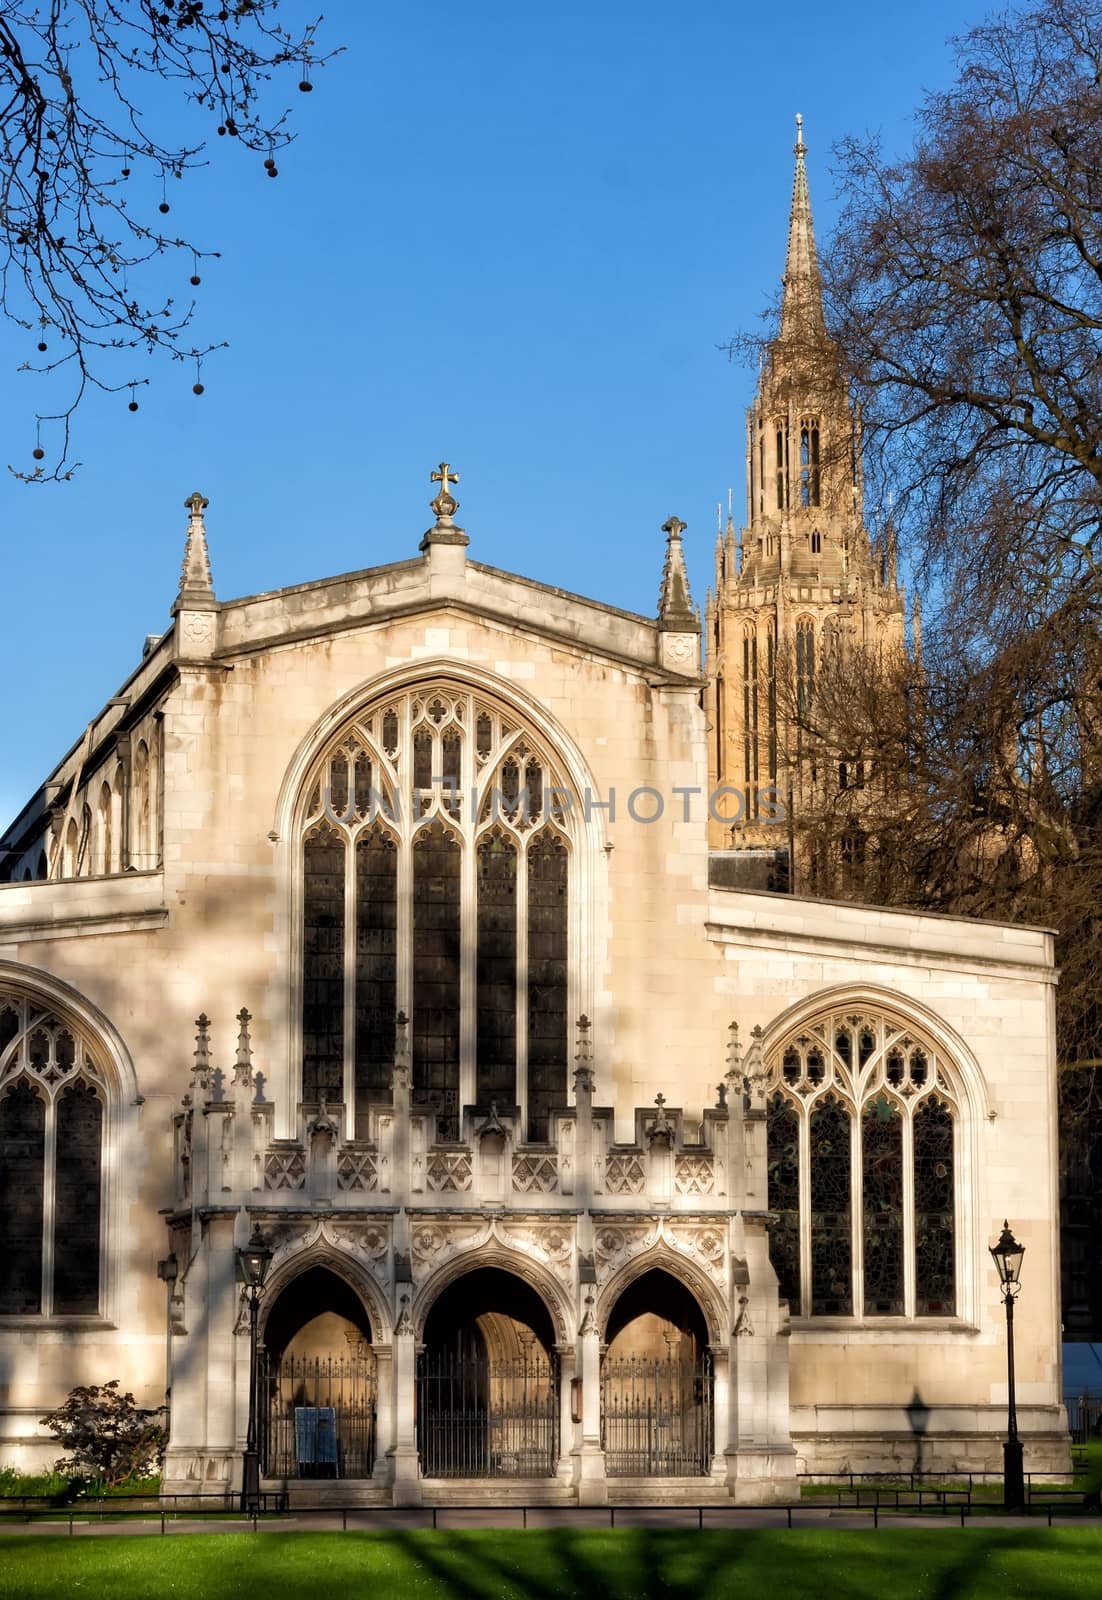 Chapel in Westminster abbey London